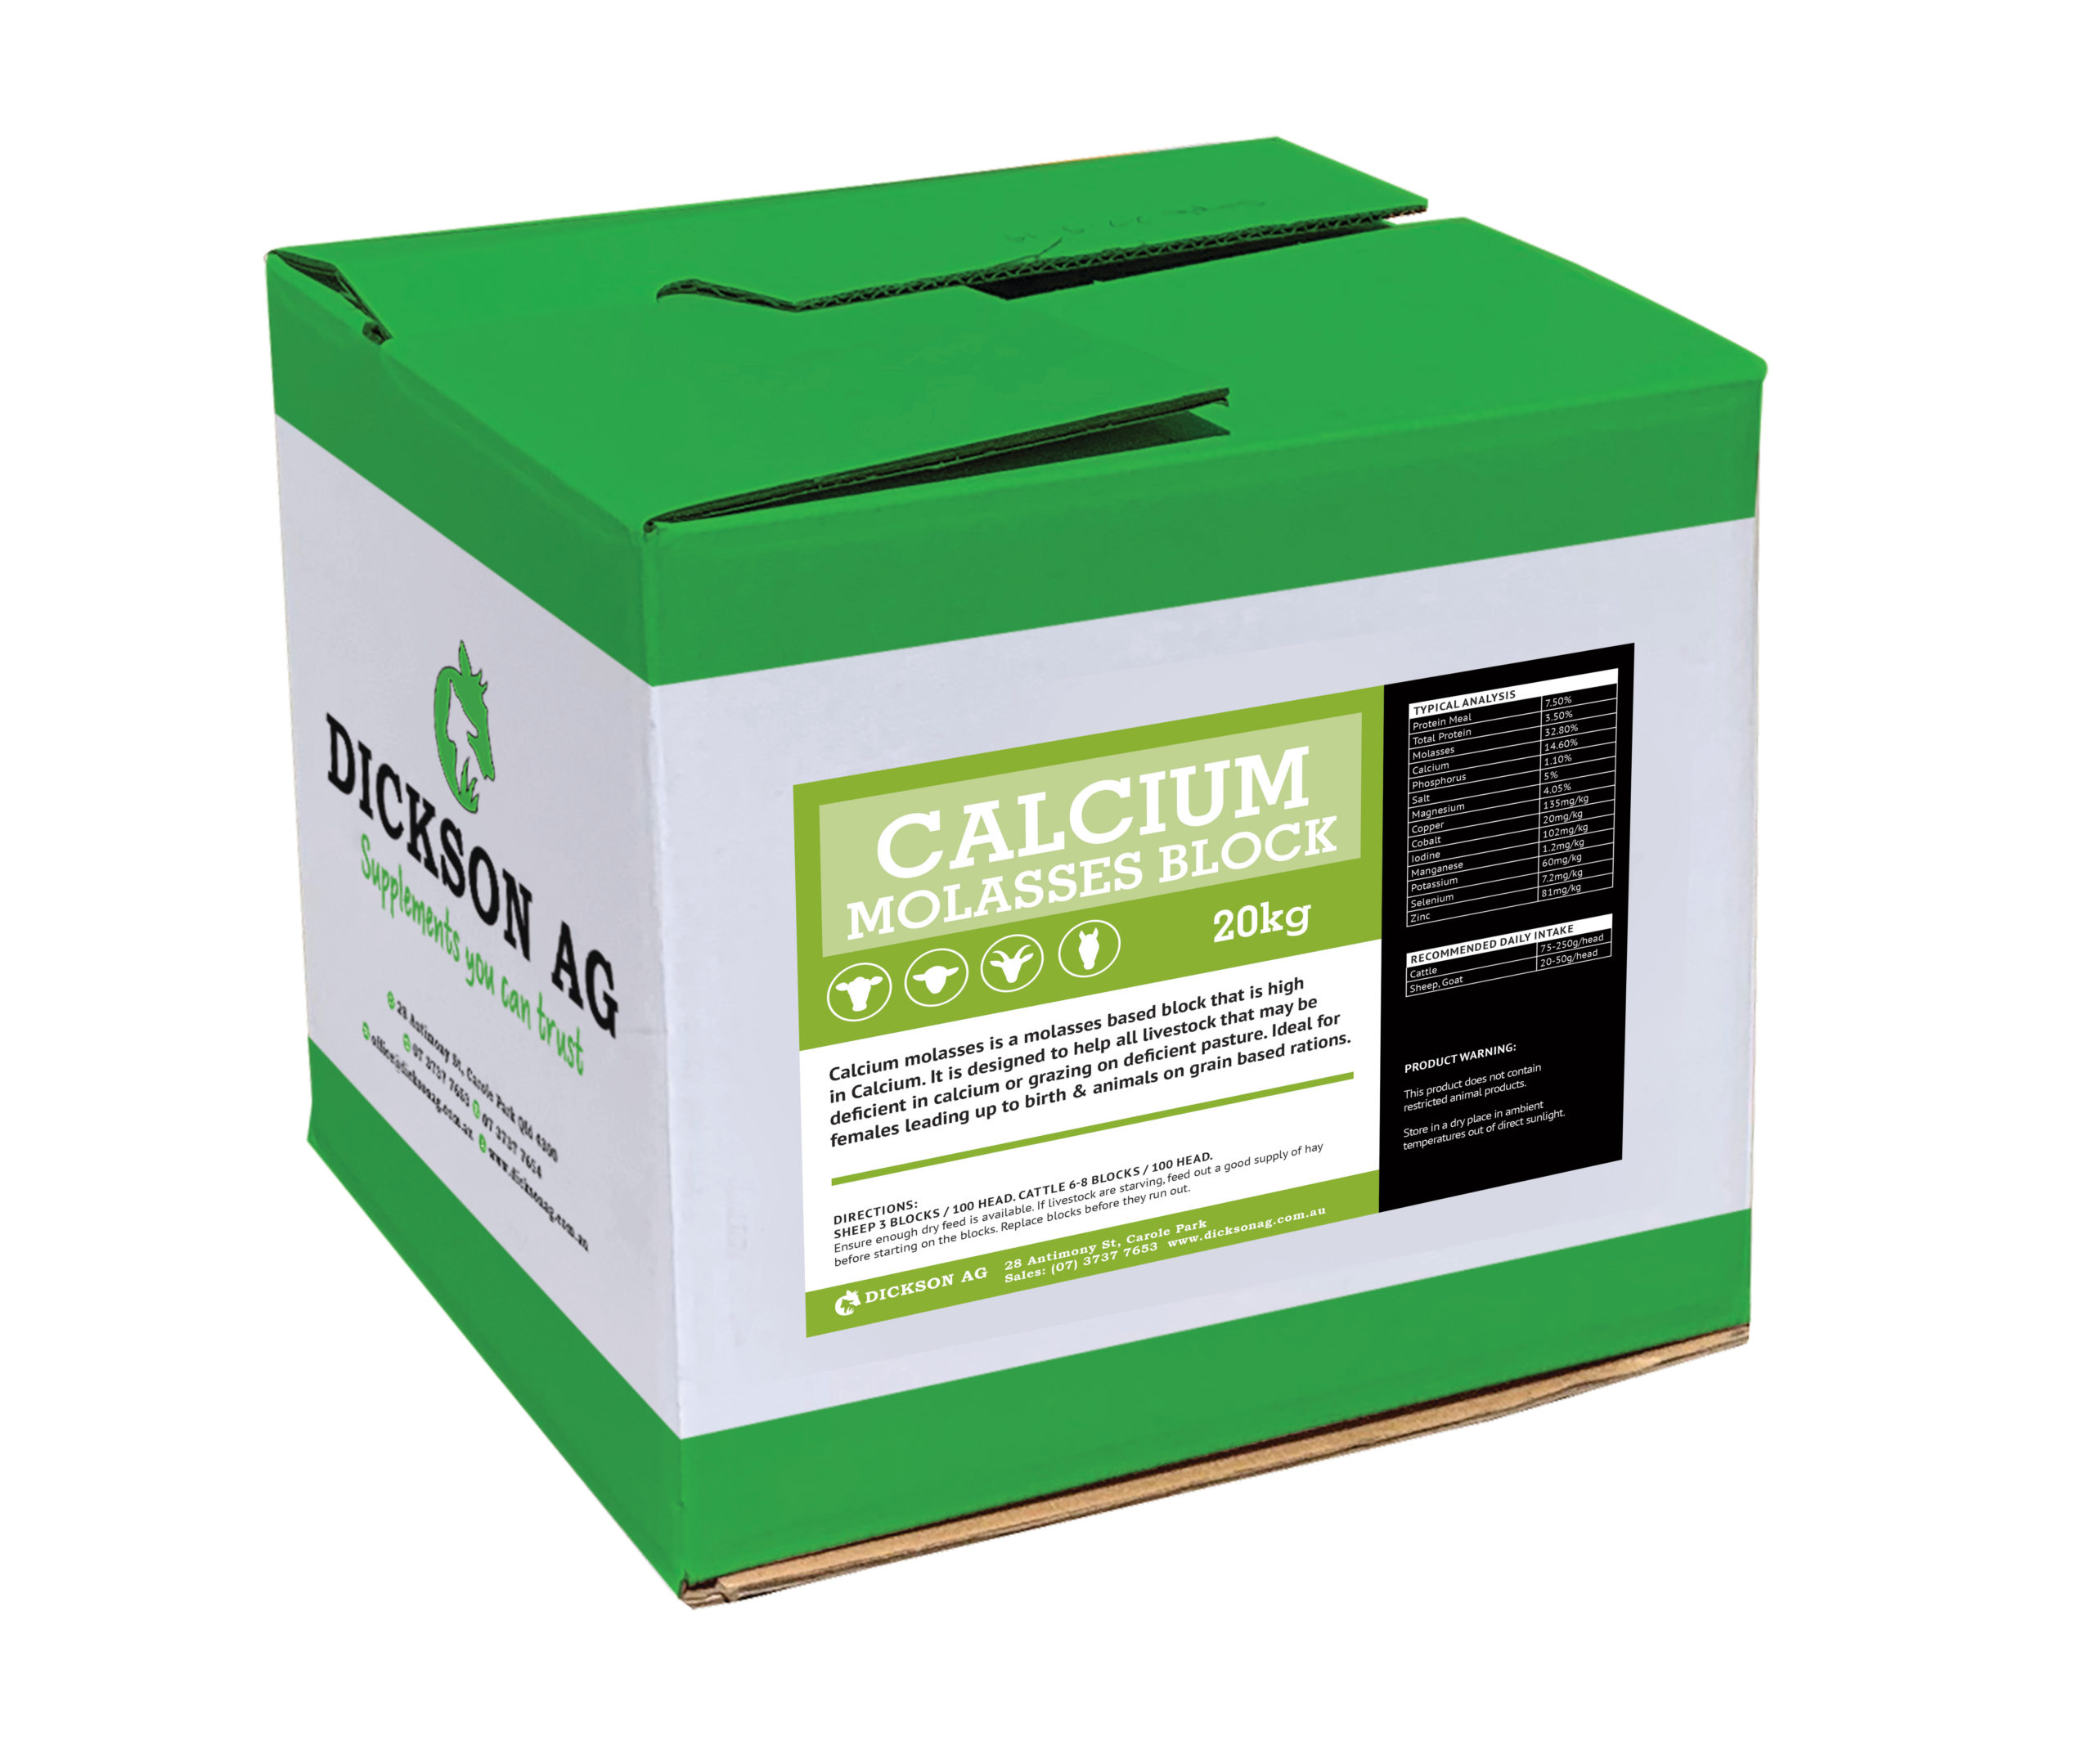 Calcium Molasses 20KG Box